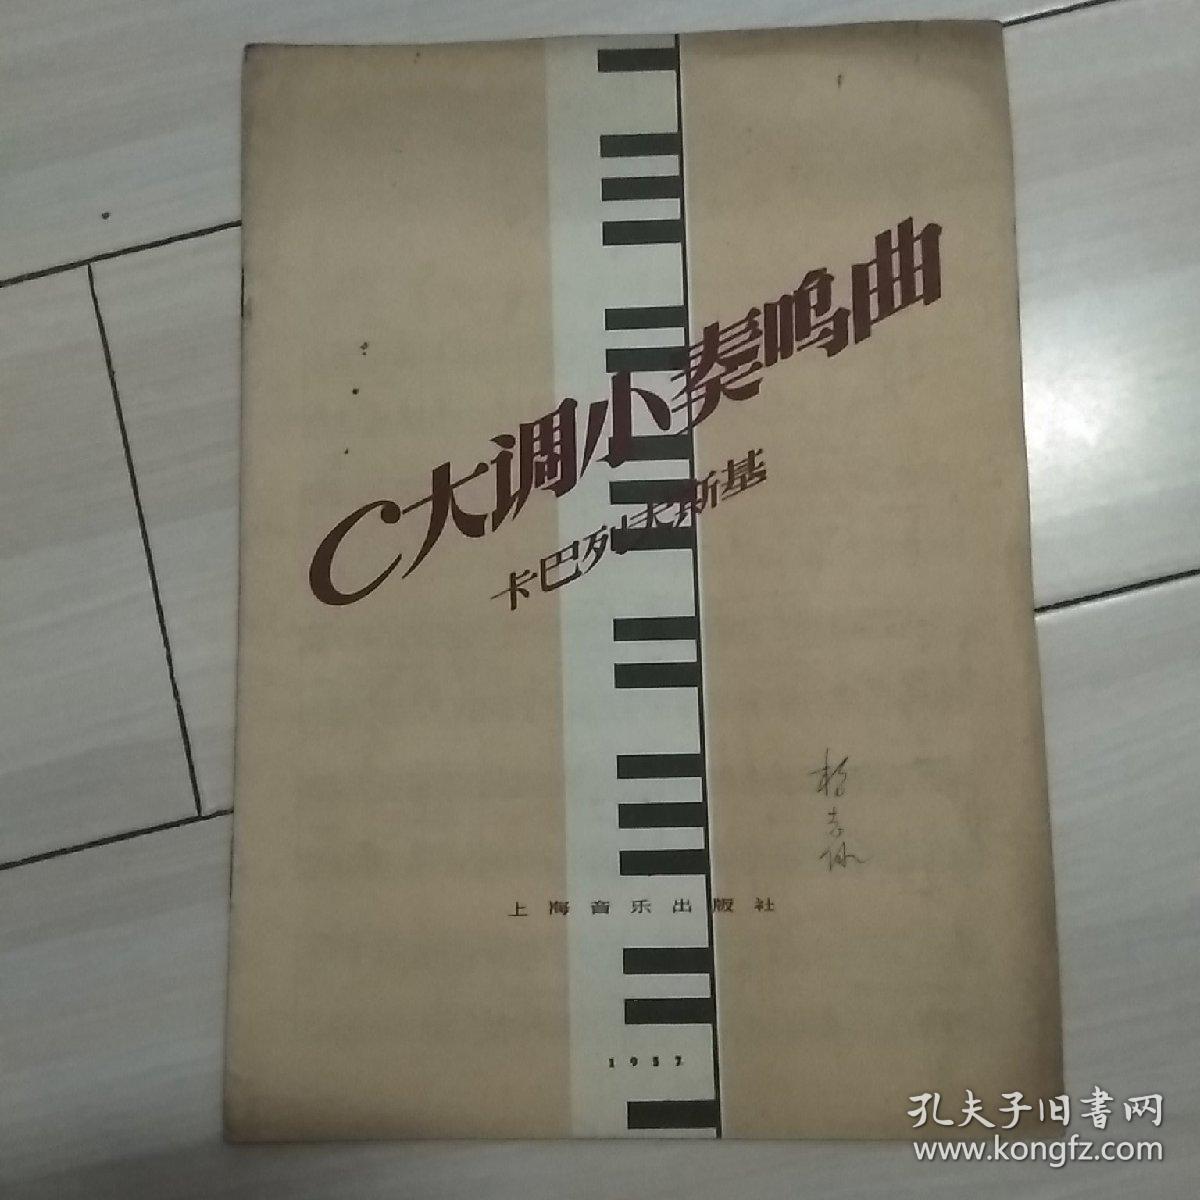 C大调小奏鸣曲(1957年)